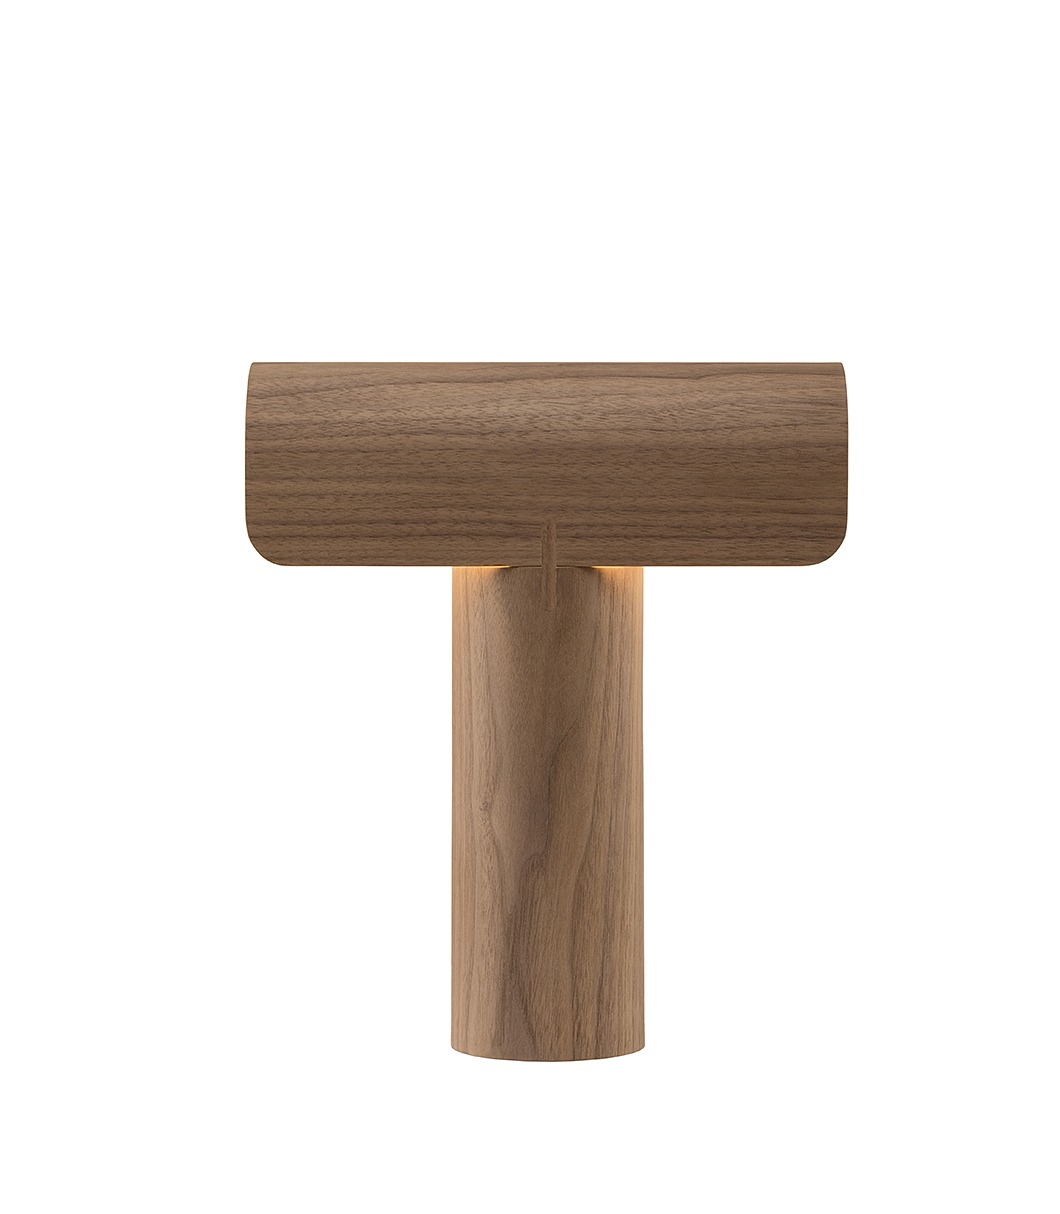 Teelo 8020 table lamp is available in walnut veneer